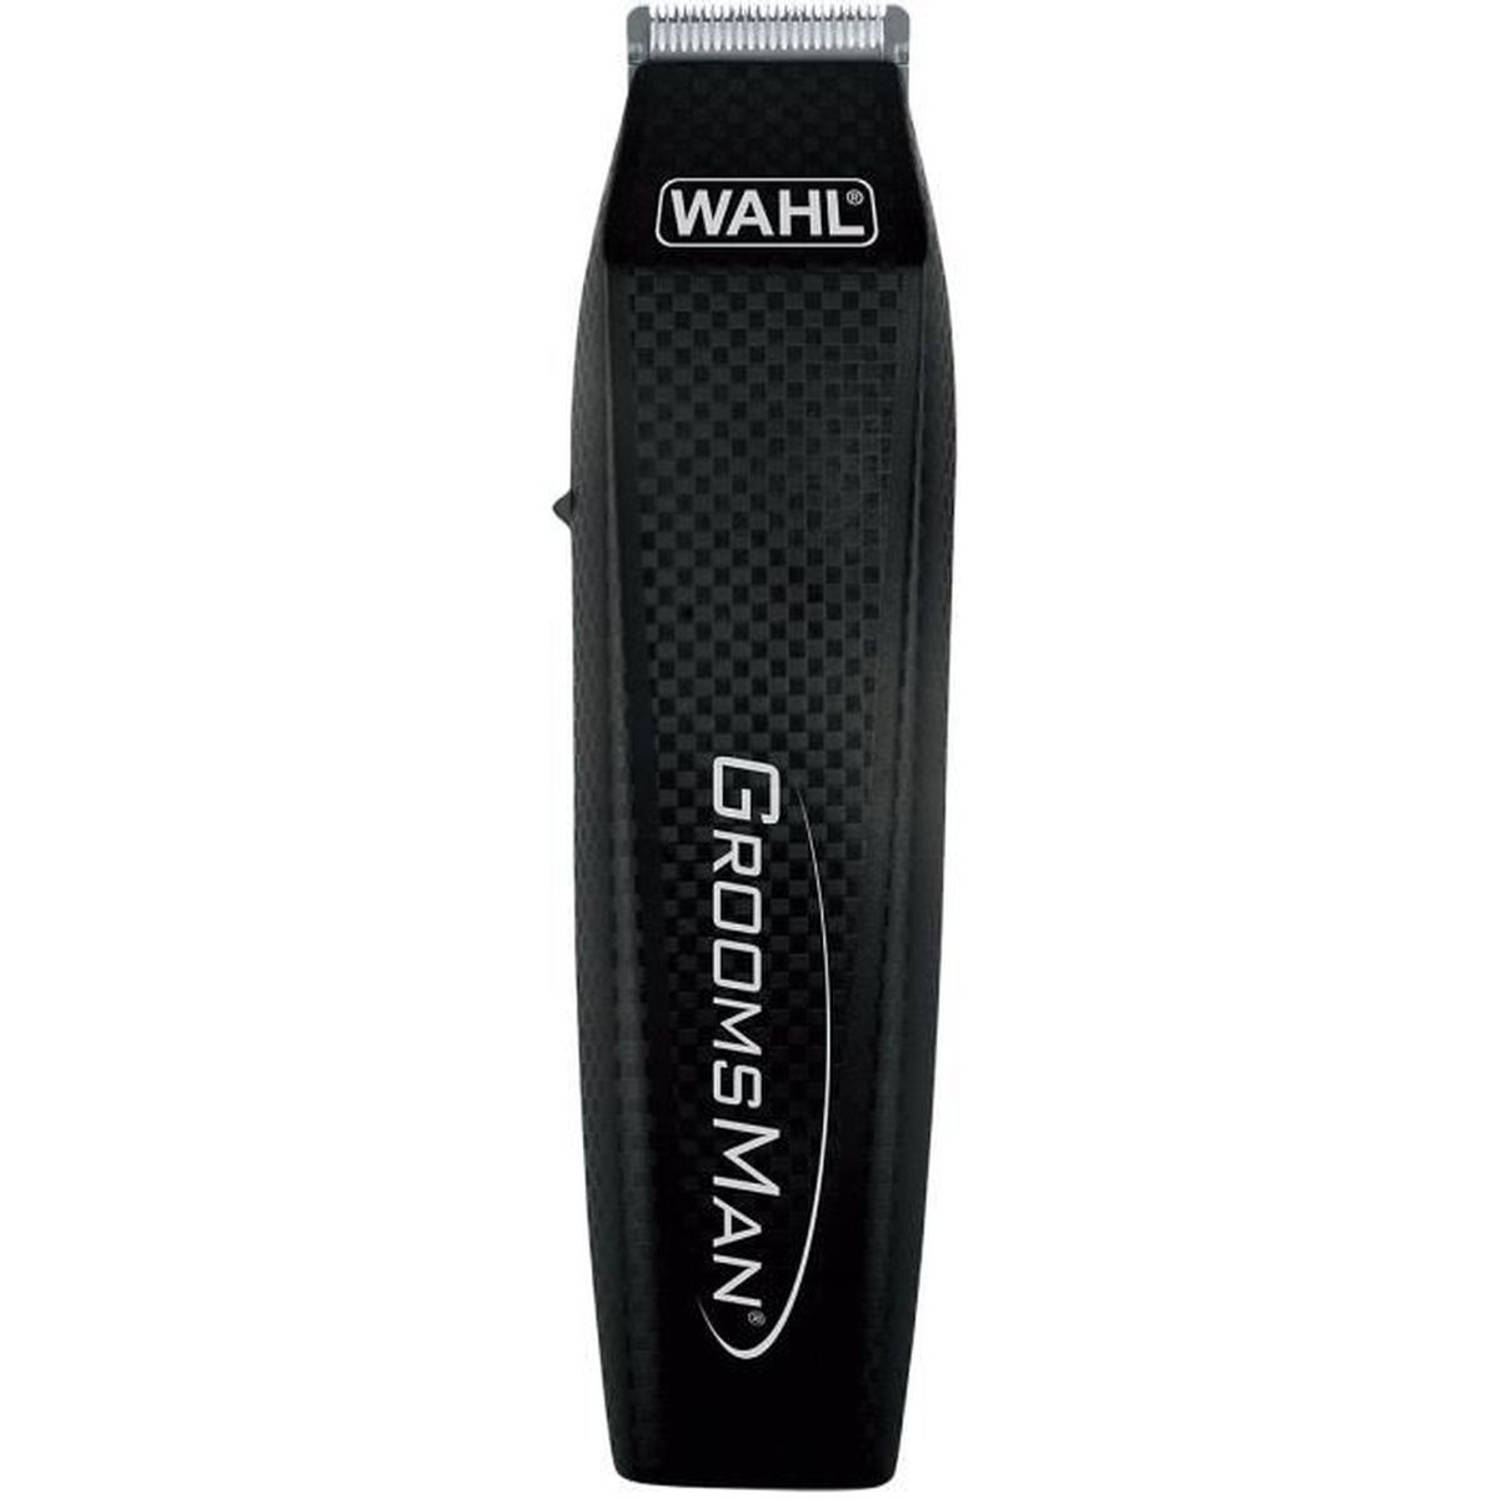 WAHL GroomsMan alles-in-één multifunctionele trimmer - professionele en afneembare snijkop